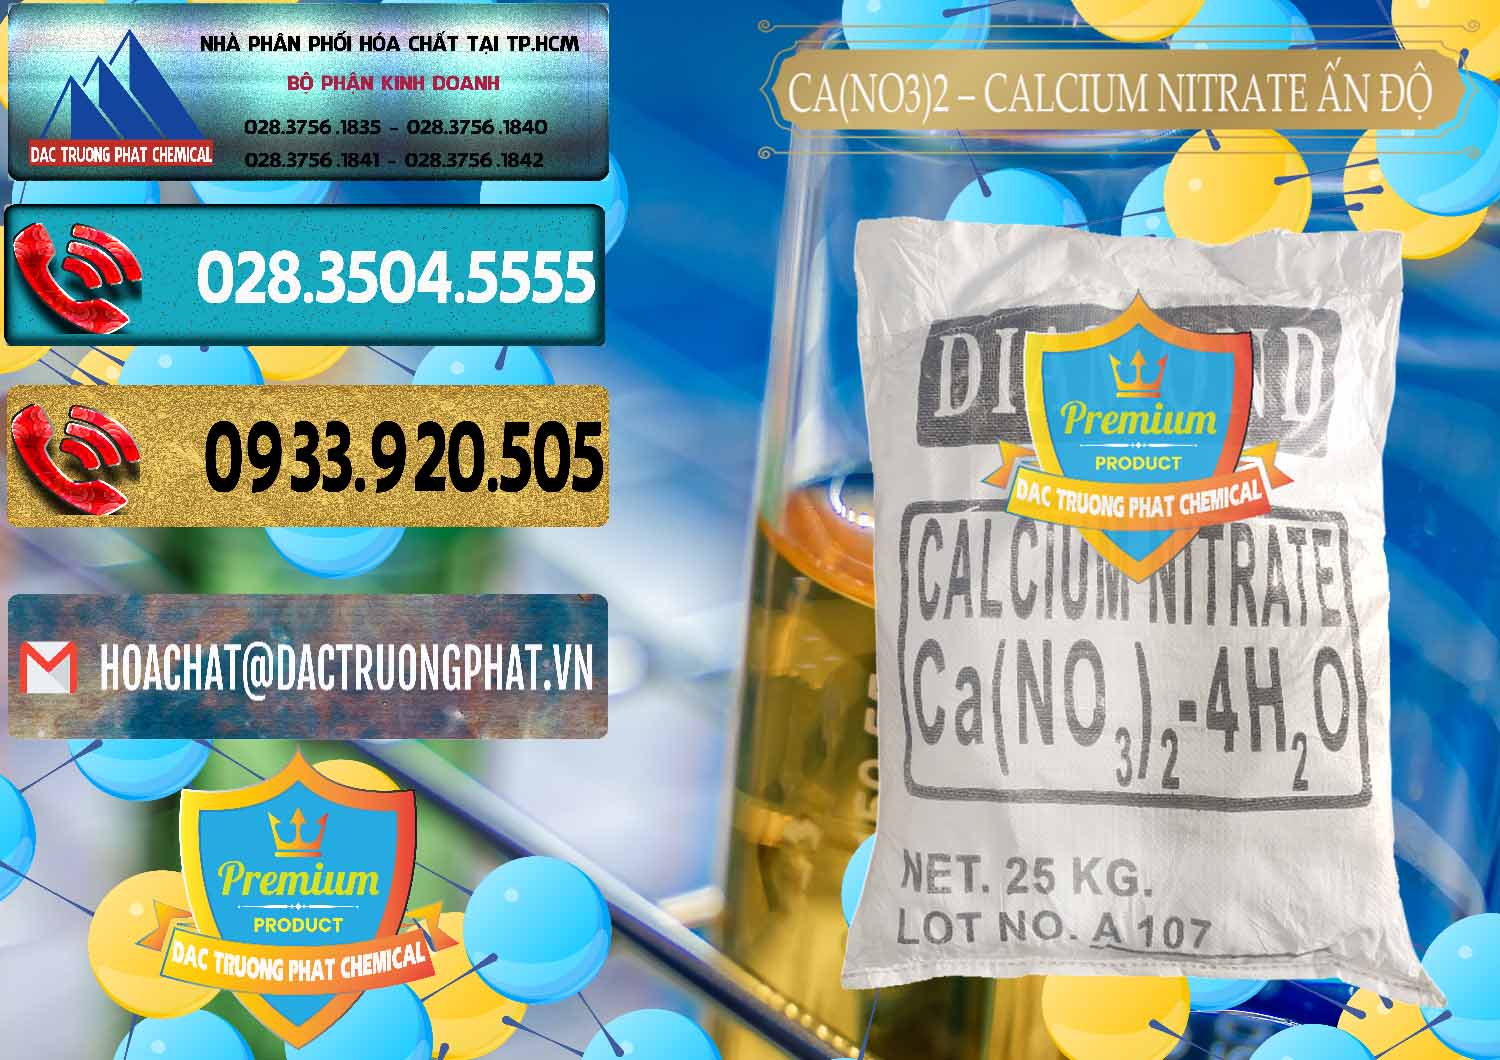 Nơi bán - cung cấp CA(NO3)2 – Calcium Nitrate Ấn Độ India - 0038 - Công ty phân phối ( bán ) hóa chất tại TP.HCM - hoachatdetnhuom.com